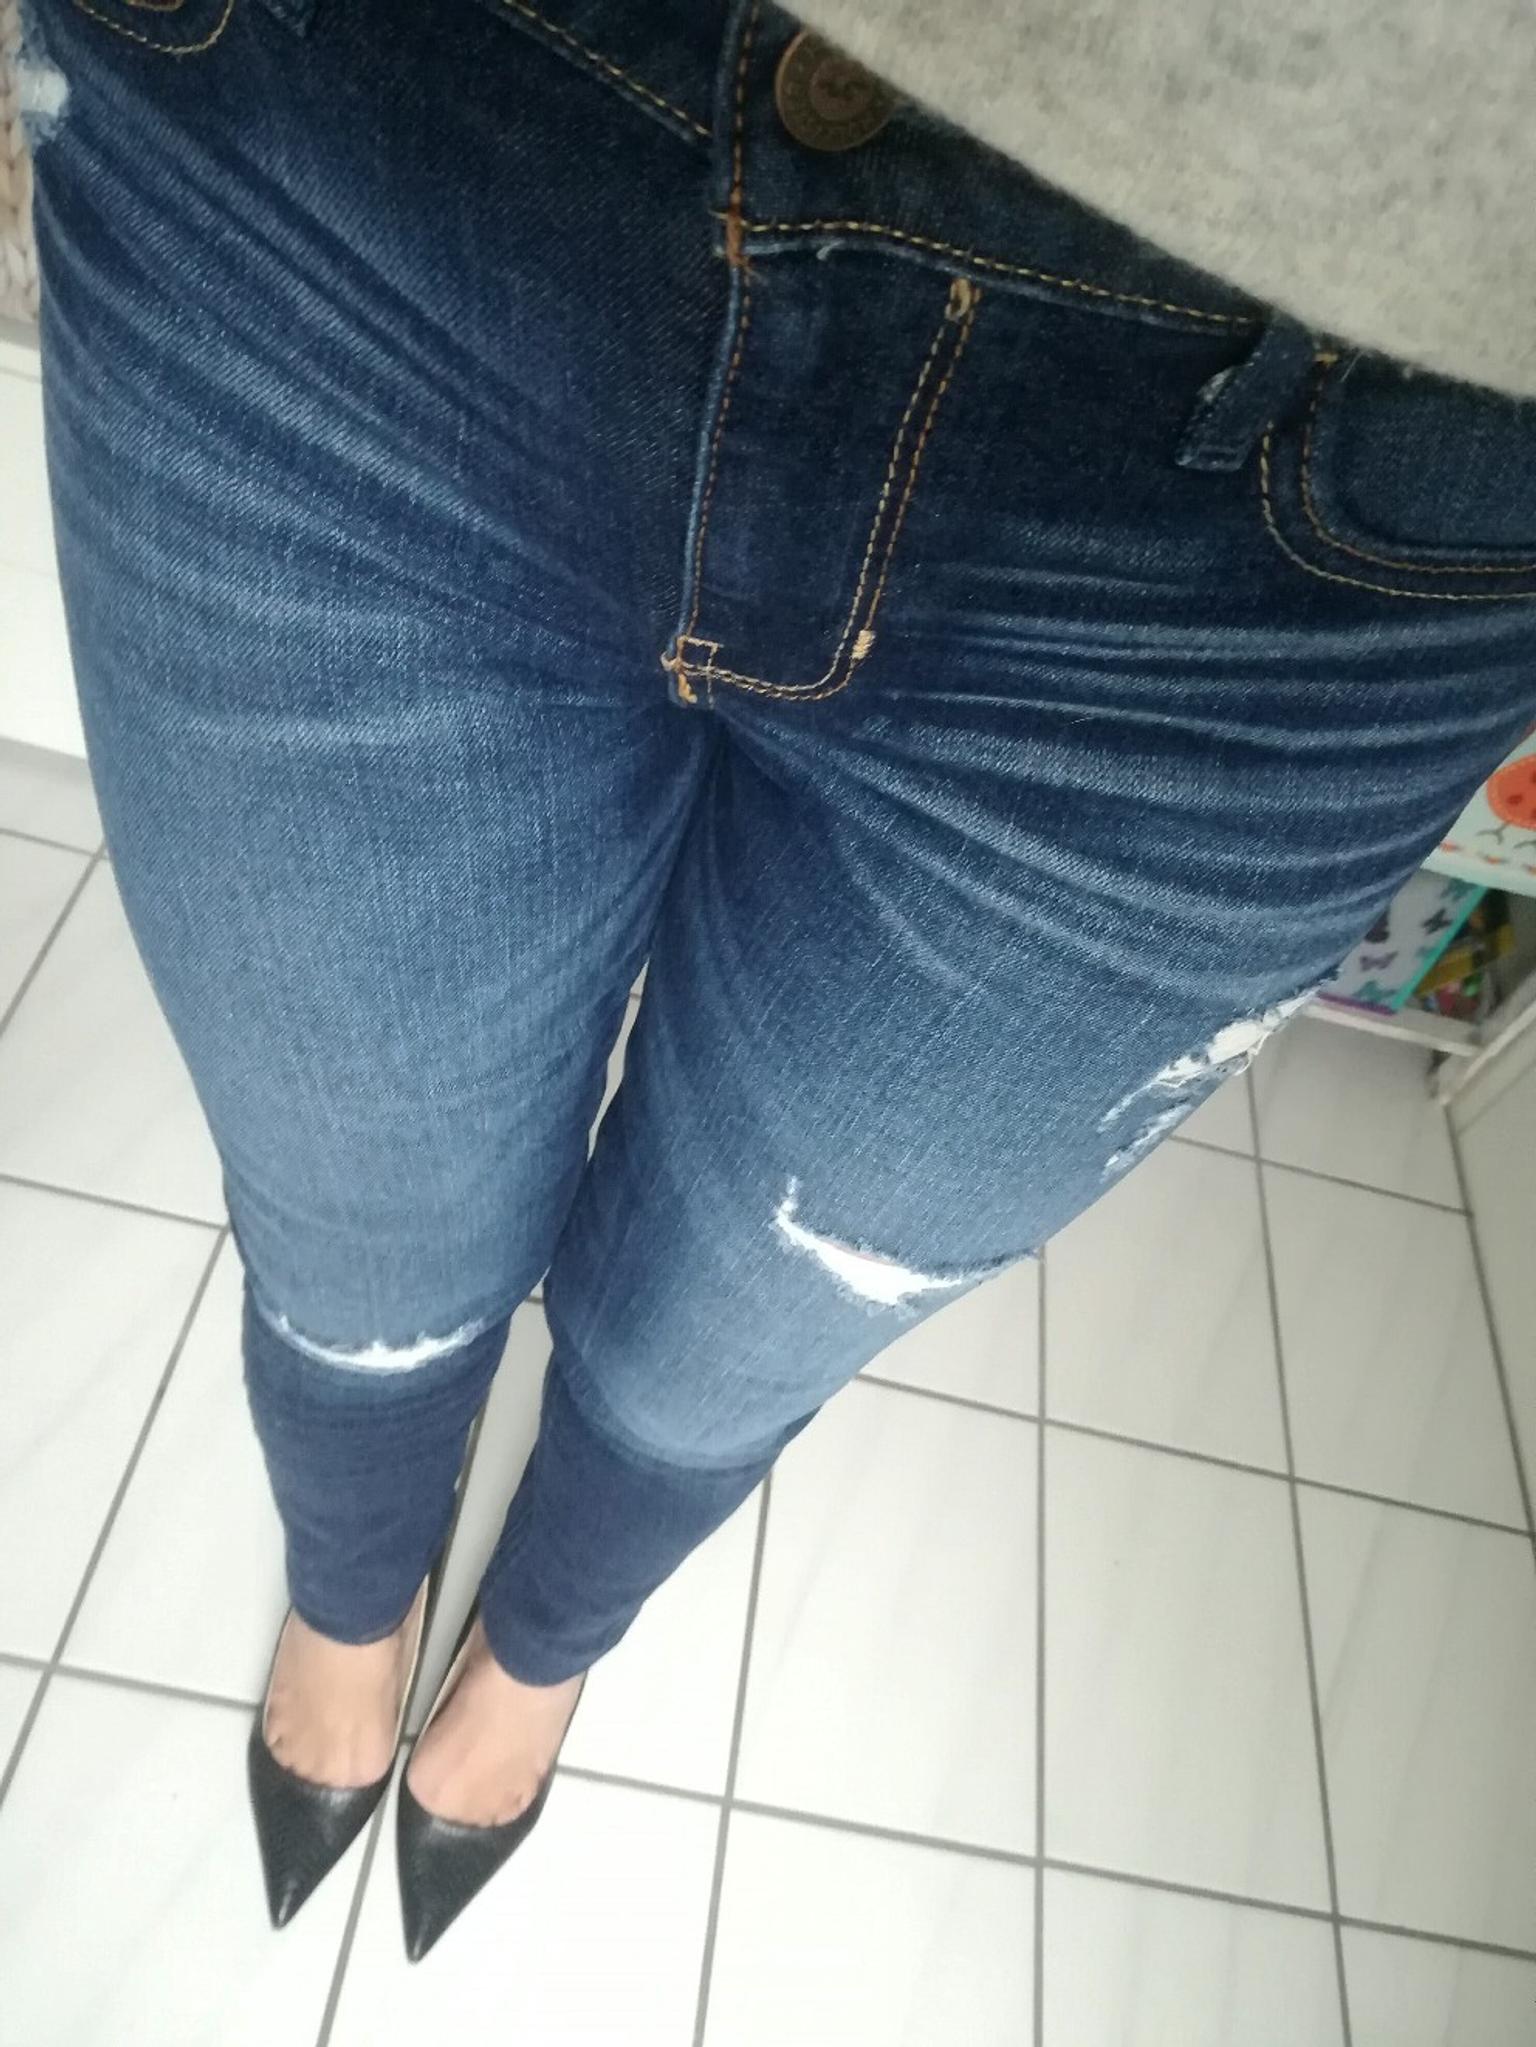 hollister jeans damen high waist